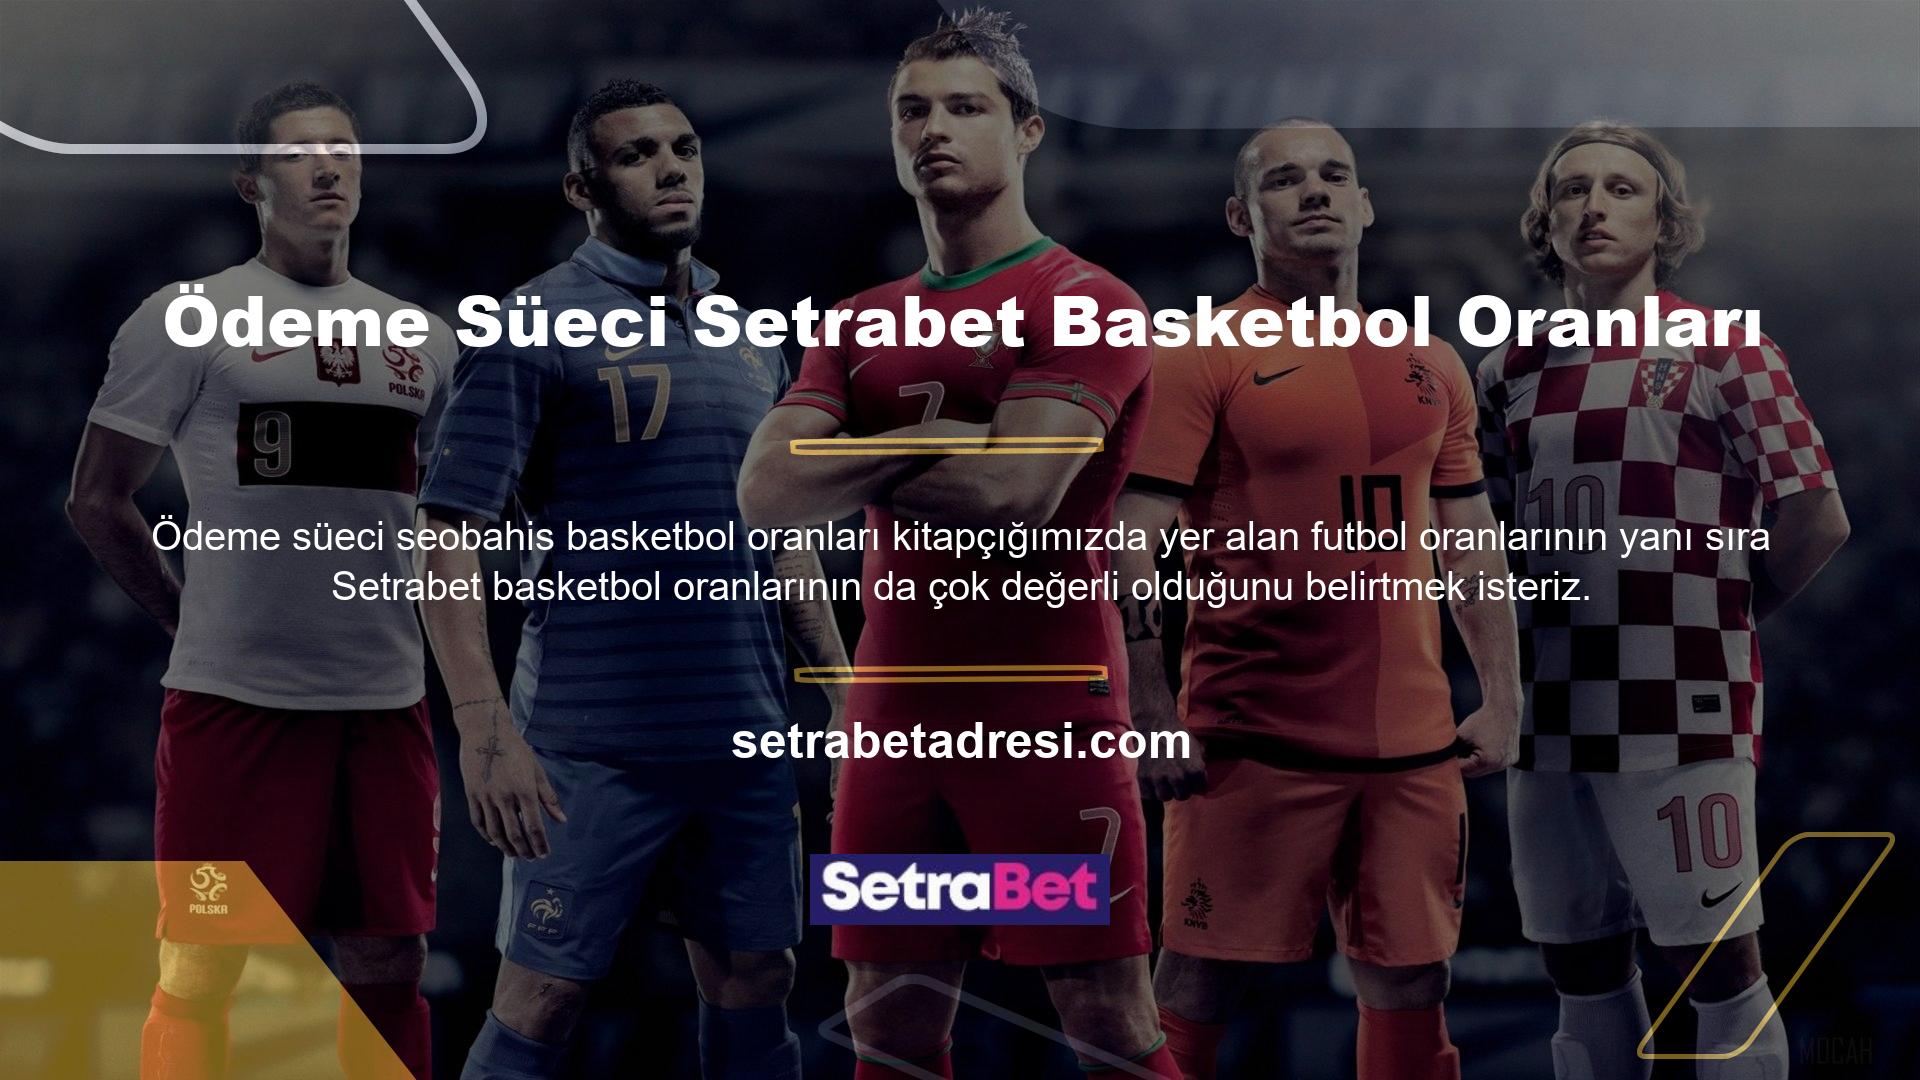 Basketbolda NBA, Euroleague, İspanya Ligi ve Yunanistan Ligi önemli ancak Türkiye Süper Ligi'nin kalitesi de yüksek